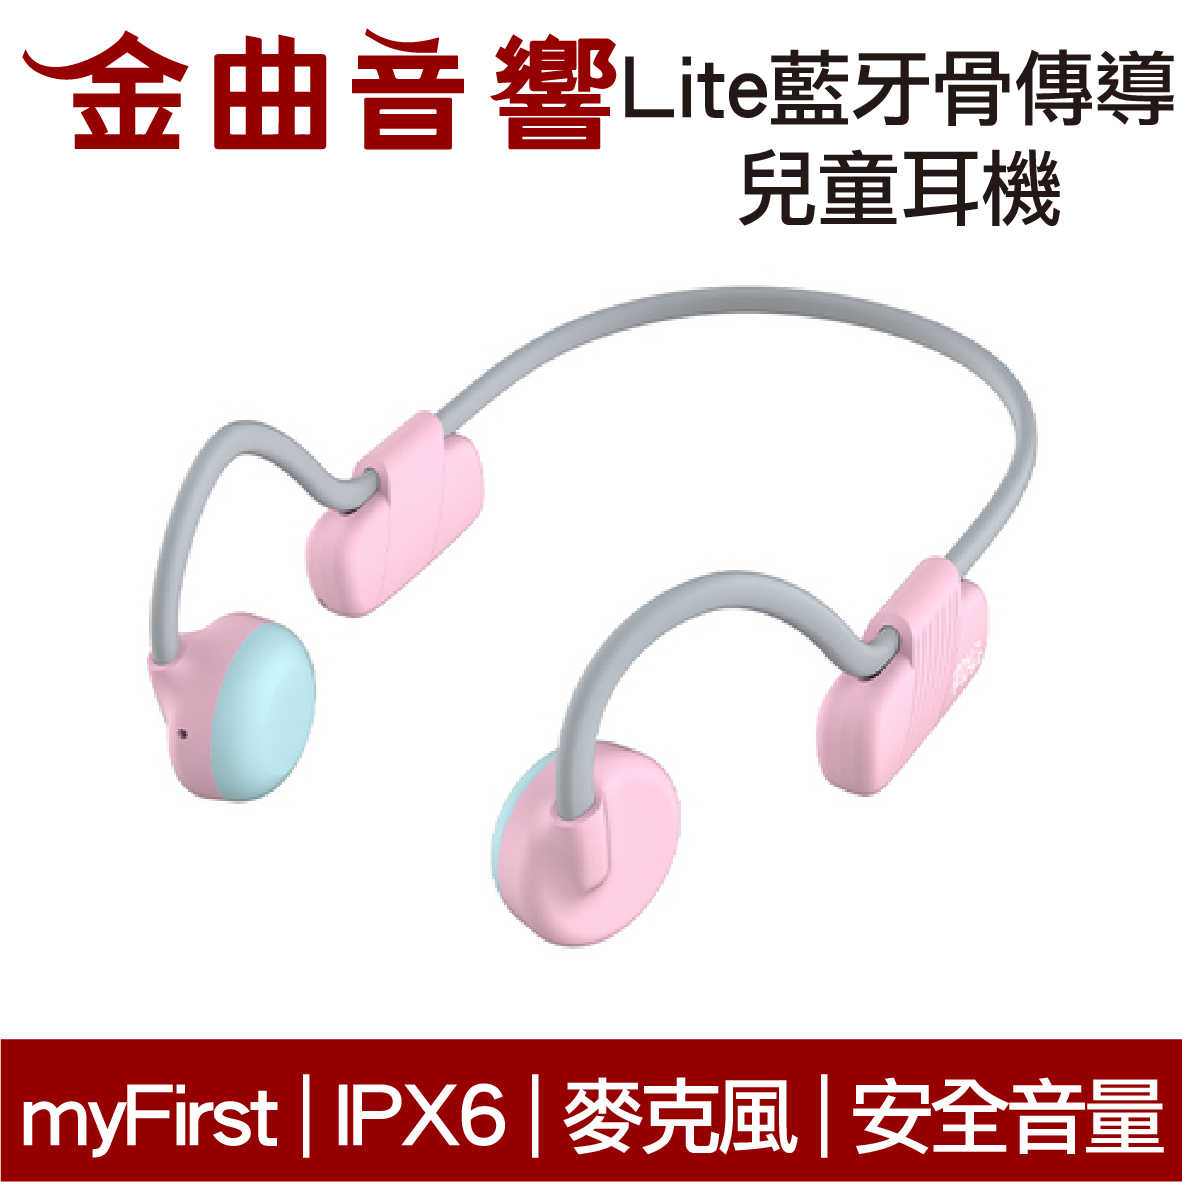 myFirst Lite 骨傳導 無線 兒童耳機 粉紅色 IPX6 安全音量 內建麥克風 藍牙5.0 | 金曲音響